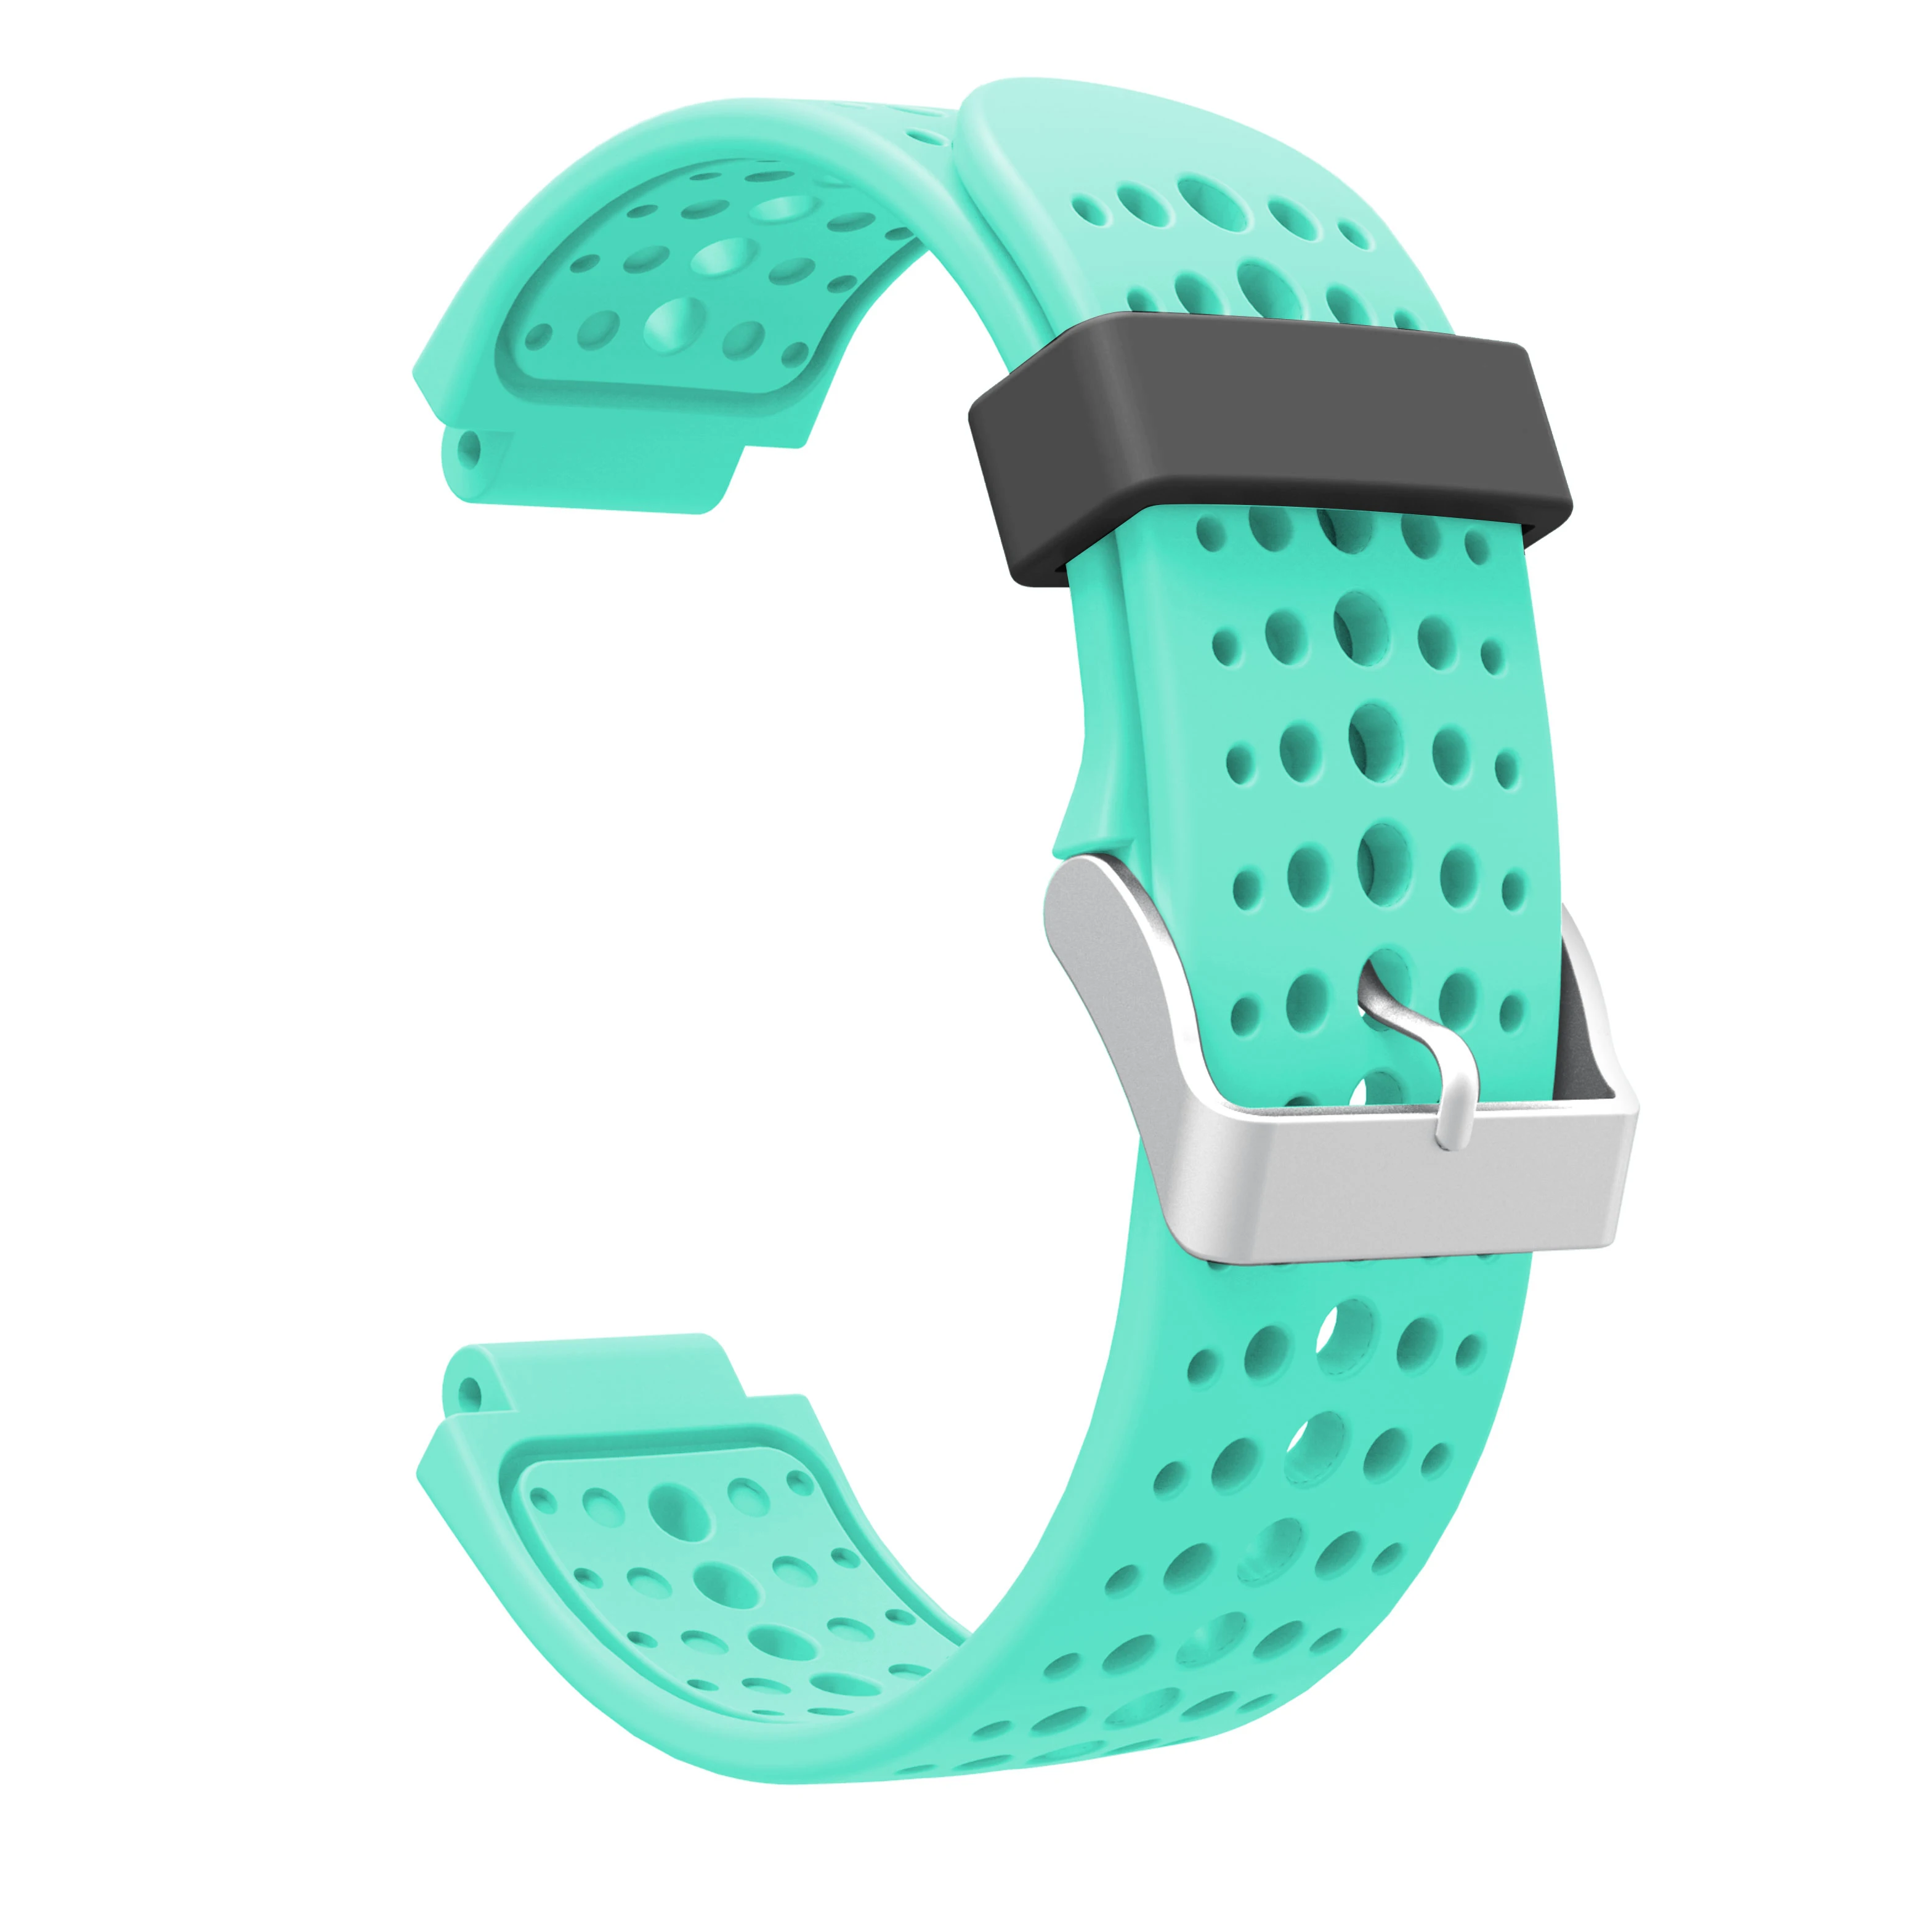 Yayuu силиконовый ремешок для наручных часов Garmin Forerunner 220/230/235/620/630/735XT браслет на запястье сменный ремешок с пряжкой браслет - Цвет: Mint Green